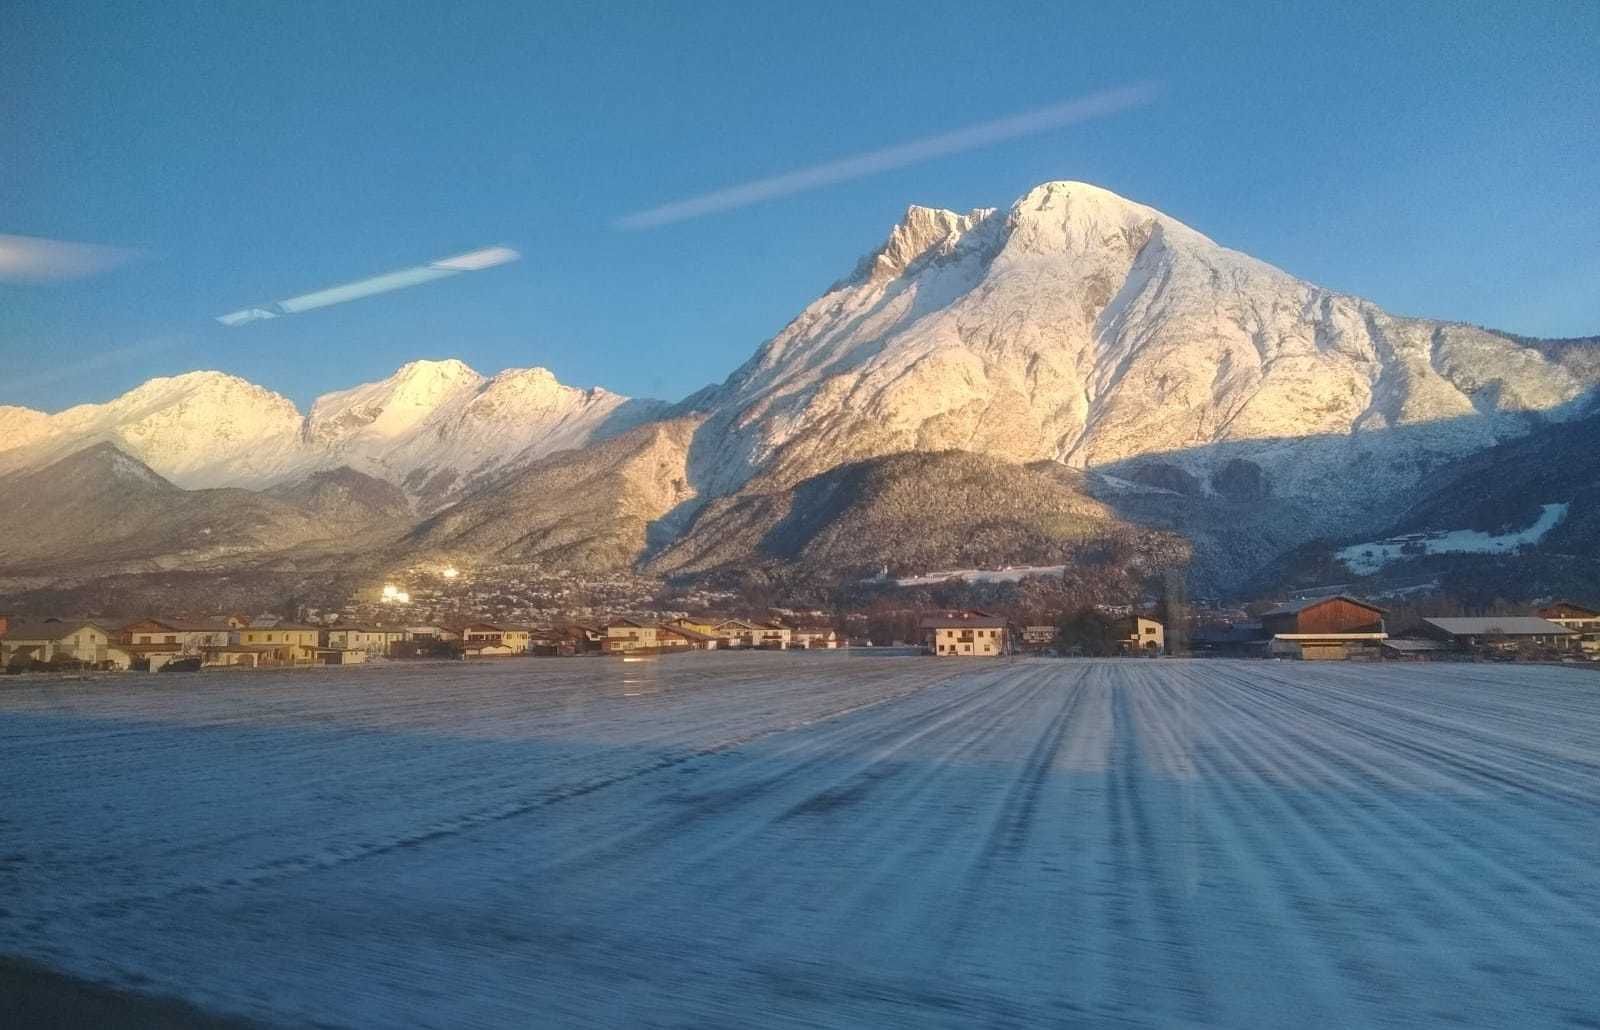 Iets verderop ten westen van Innsbruck ligt minder sneeuw, deels door de wind. Henri schoot deze foto uit de trein